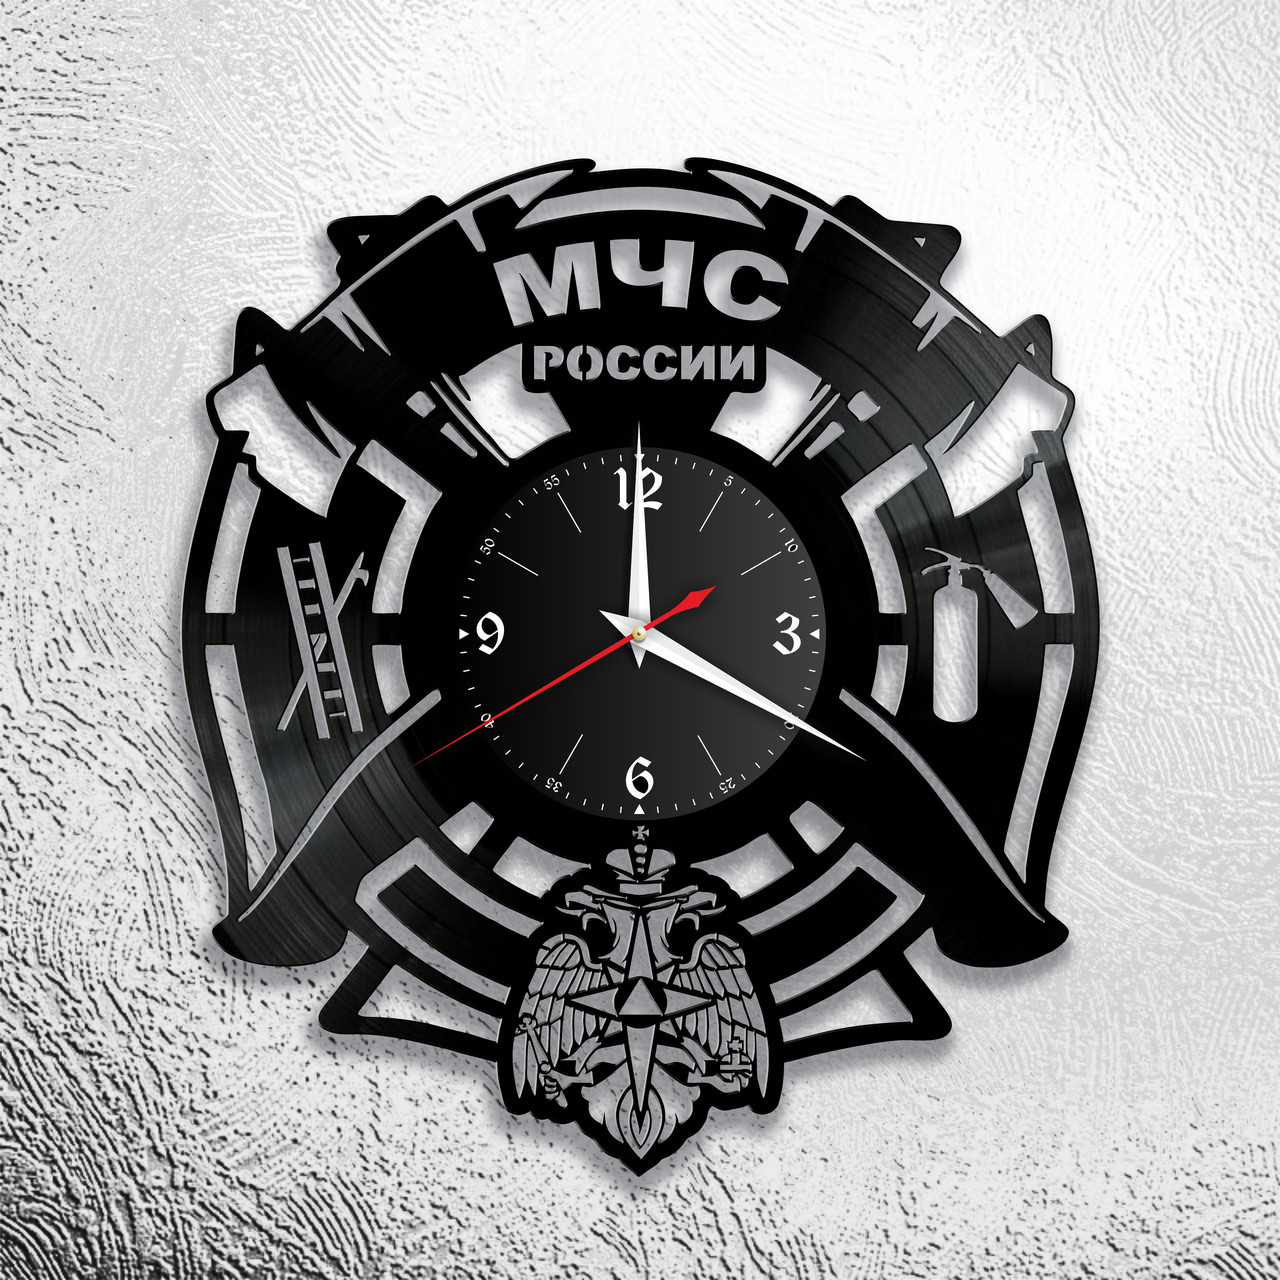 Часы из виниловой пластинки  "МЧС Россия" версия 1, фото 1